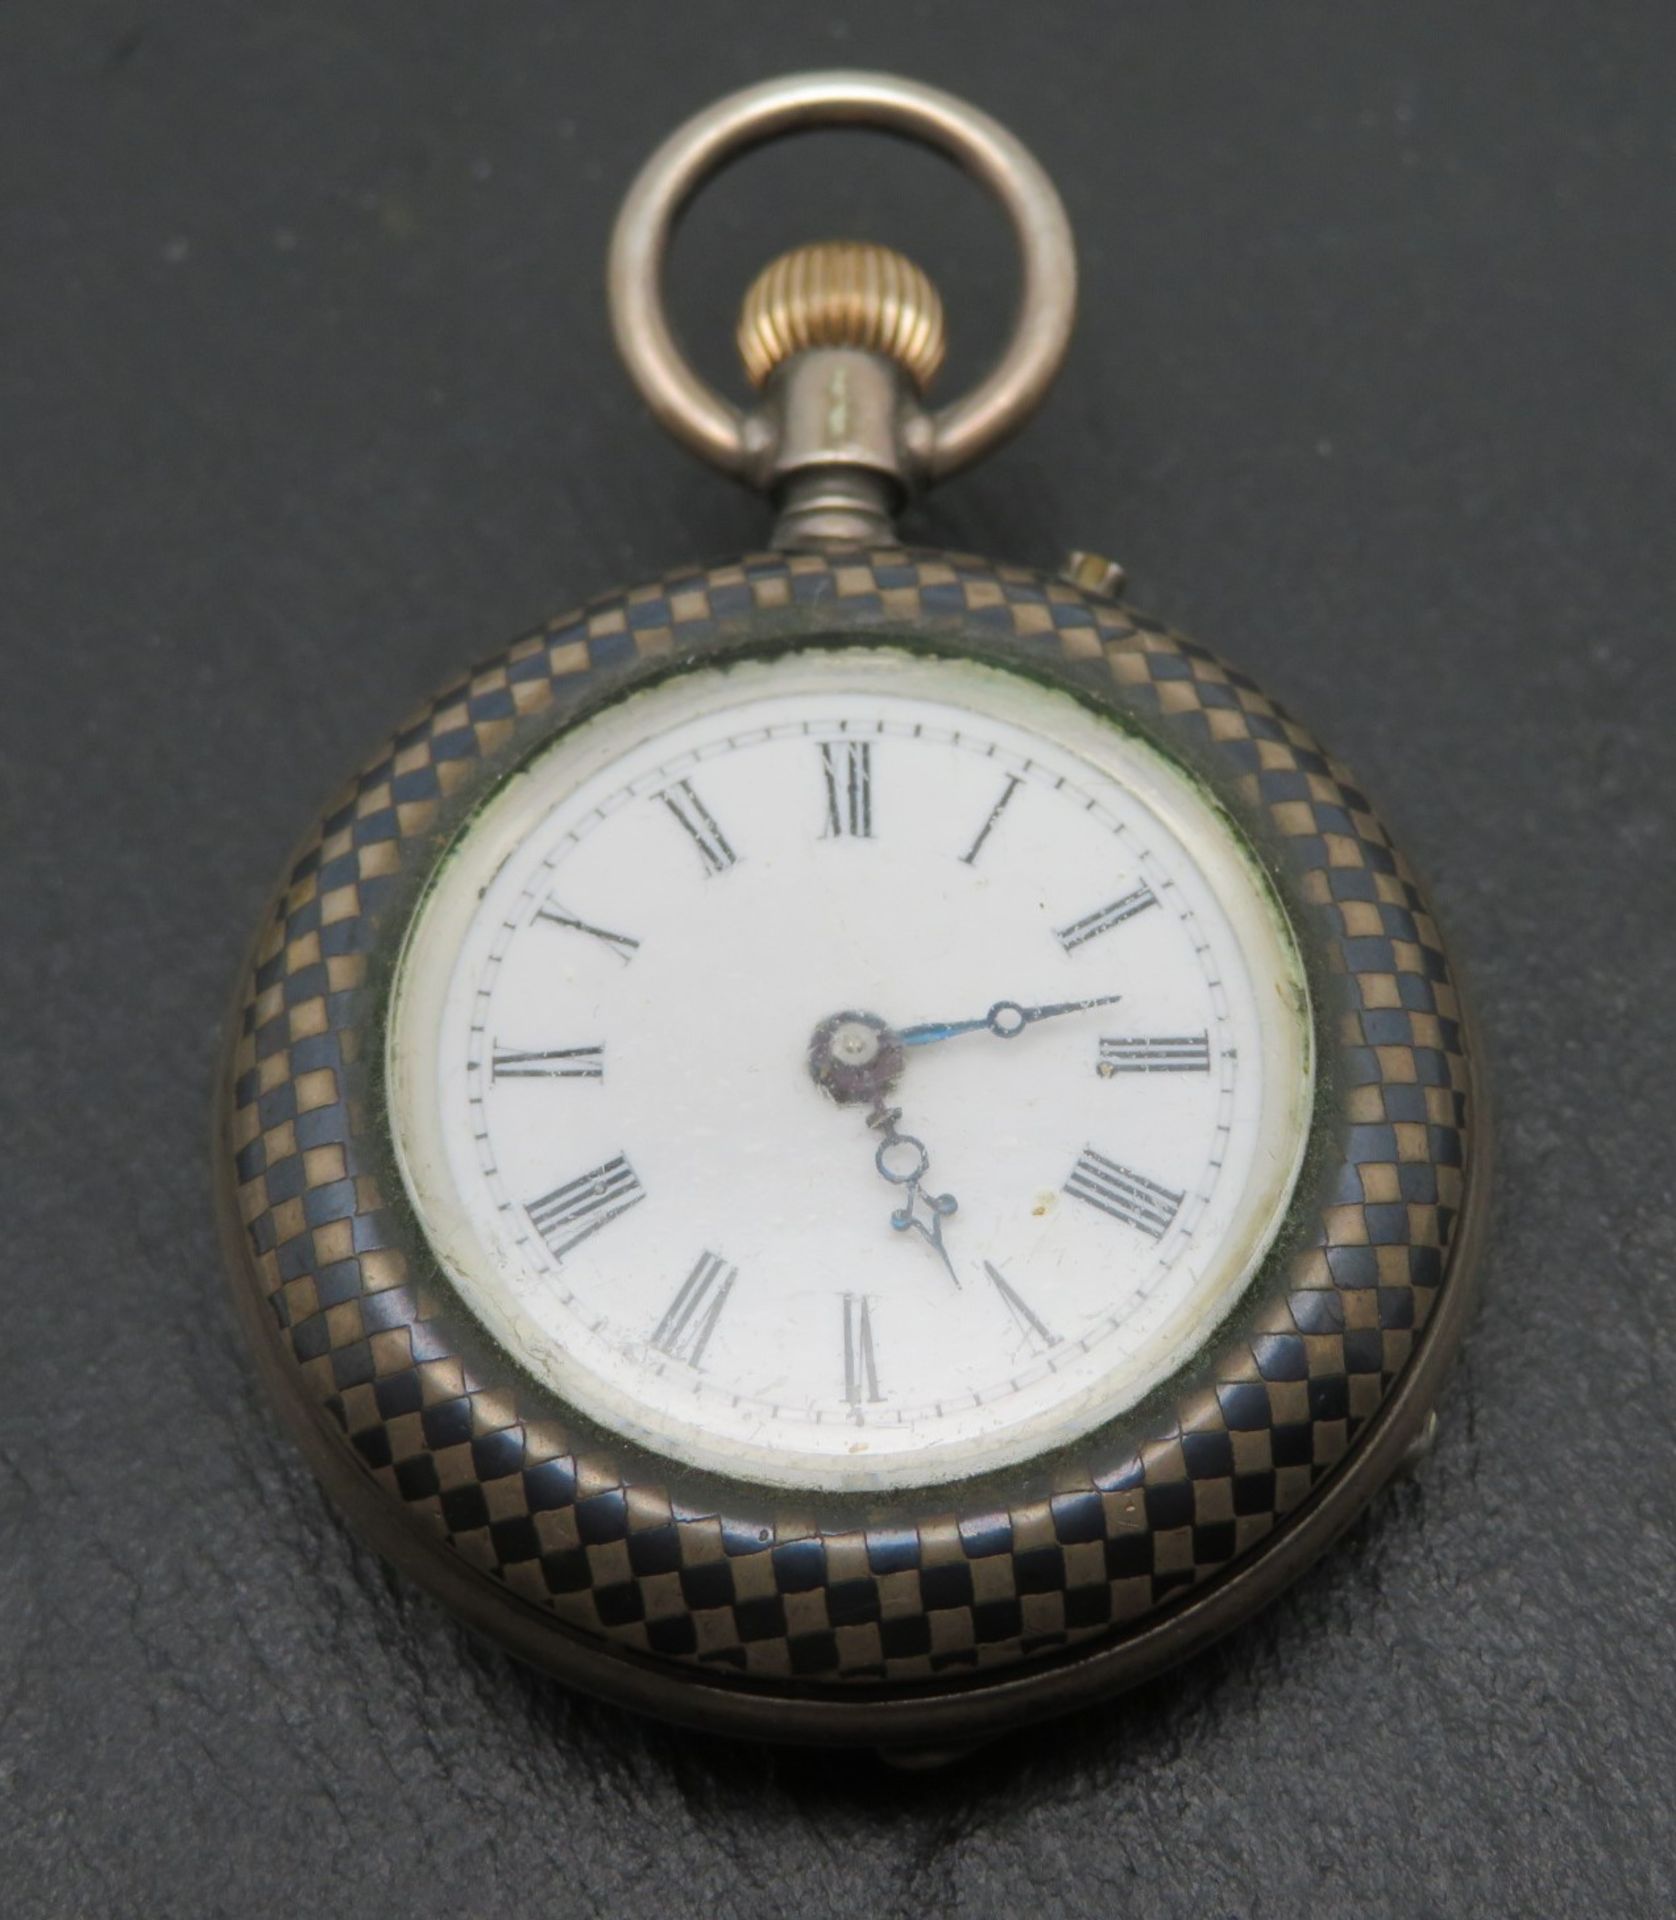 Damentaschenuhr, um 1900, Gehäuse Silber 800/000, punziert, Kronenaufzug, intakt, d 3,5 cm.